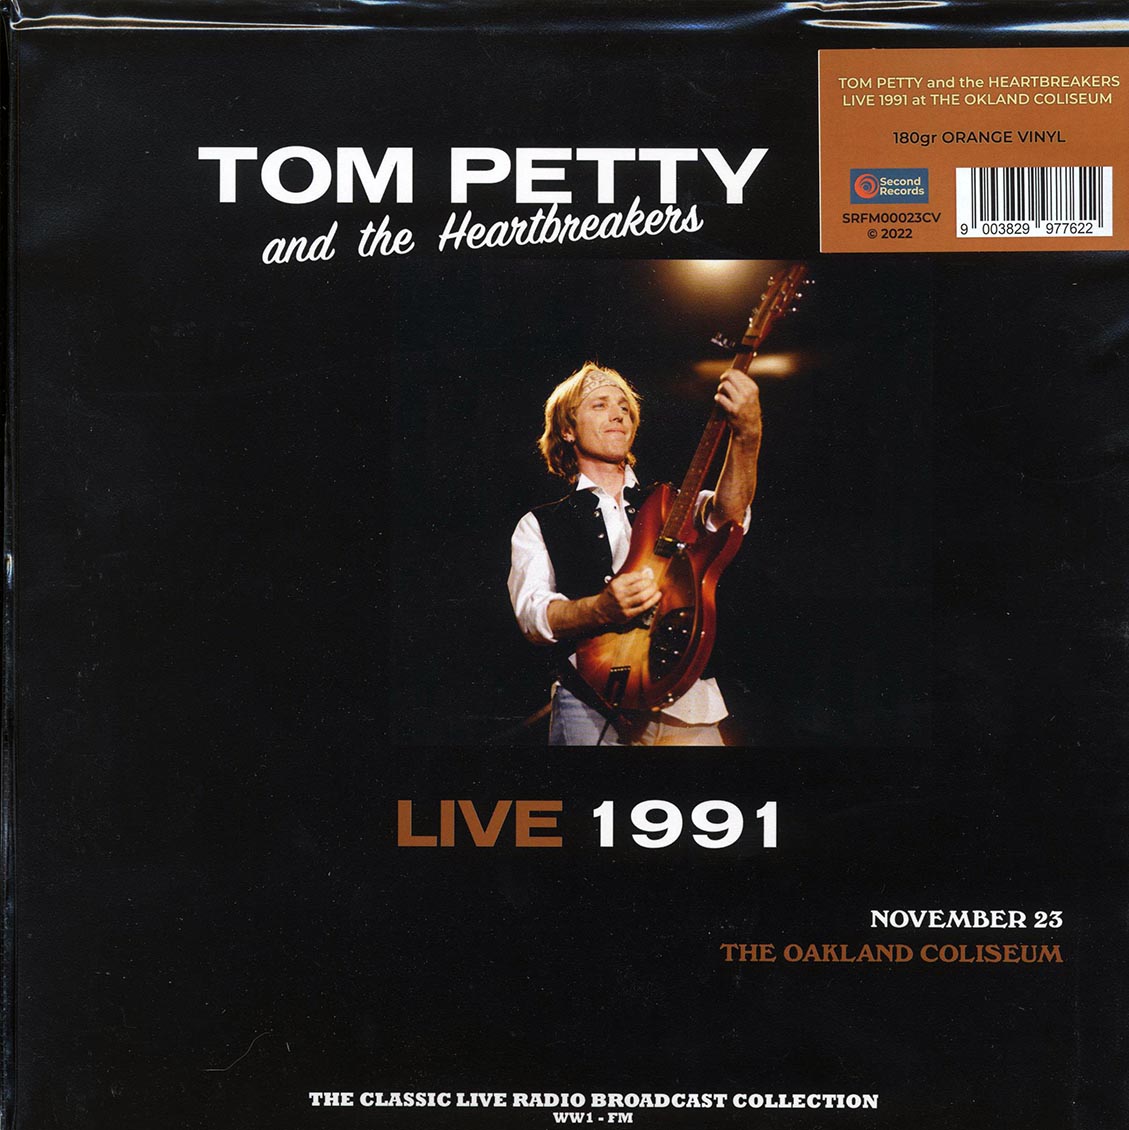 Tom Petty & The Heartbreakers - Live 1991 November 23rd The Oakland Coliseum (180g) (orange vinyl) - Vinyl LP